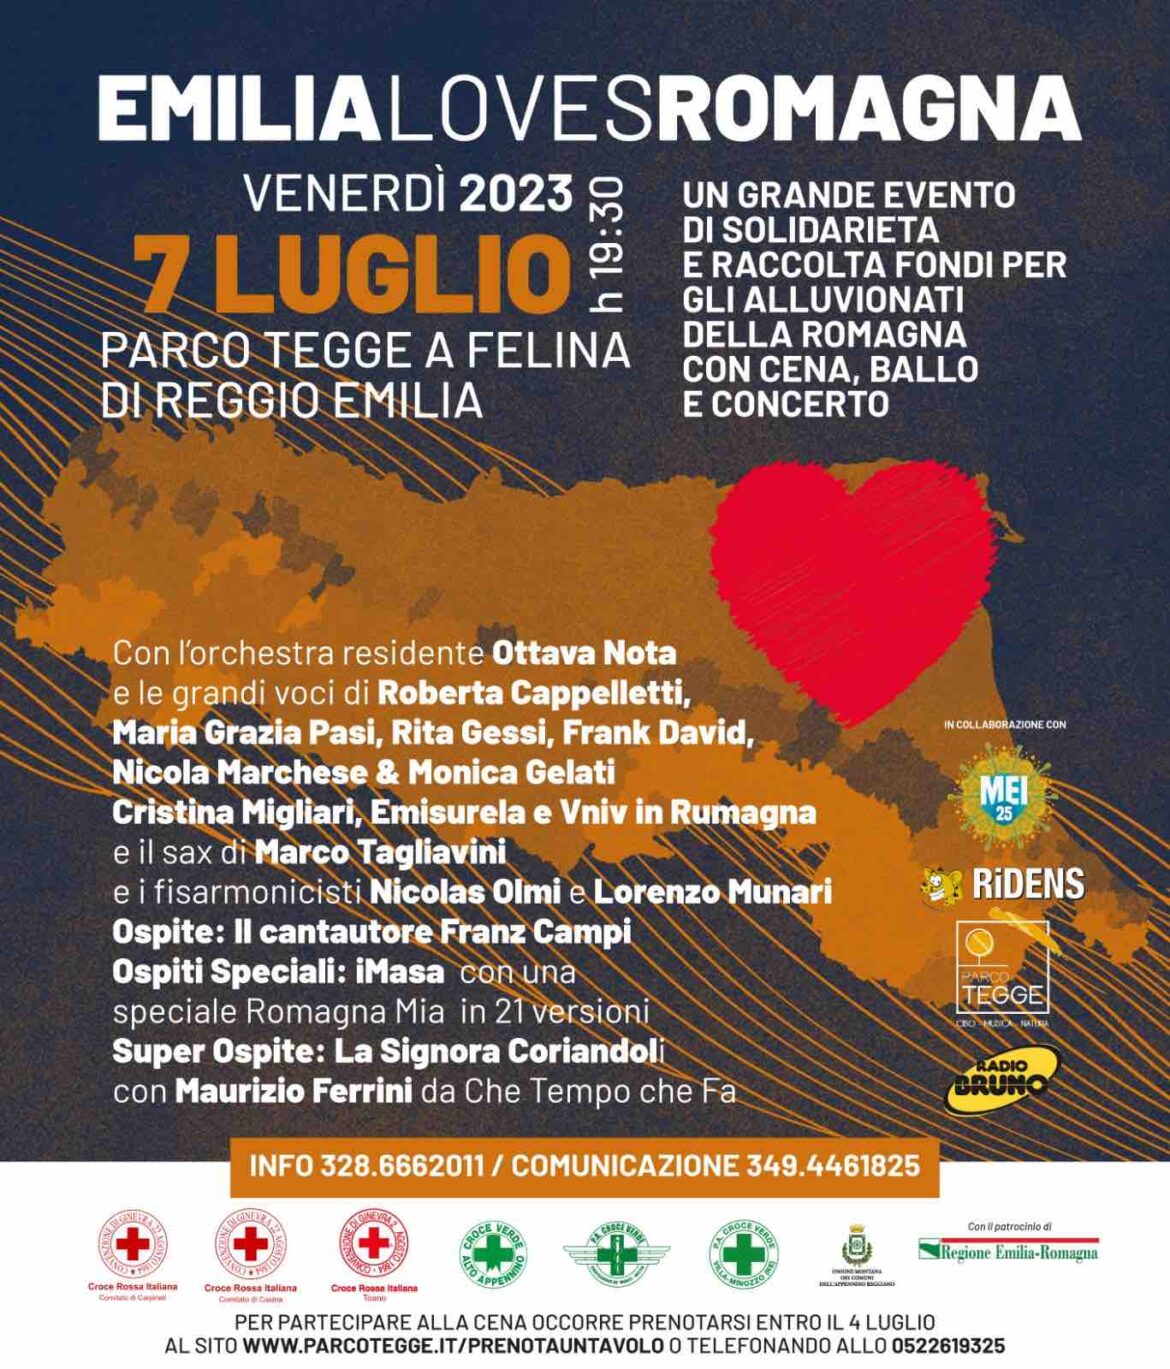 Venerdì 7 luglio arriva Emilia Loves Romagna al Parco Tegge di Felina di Reggio Emilia